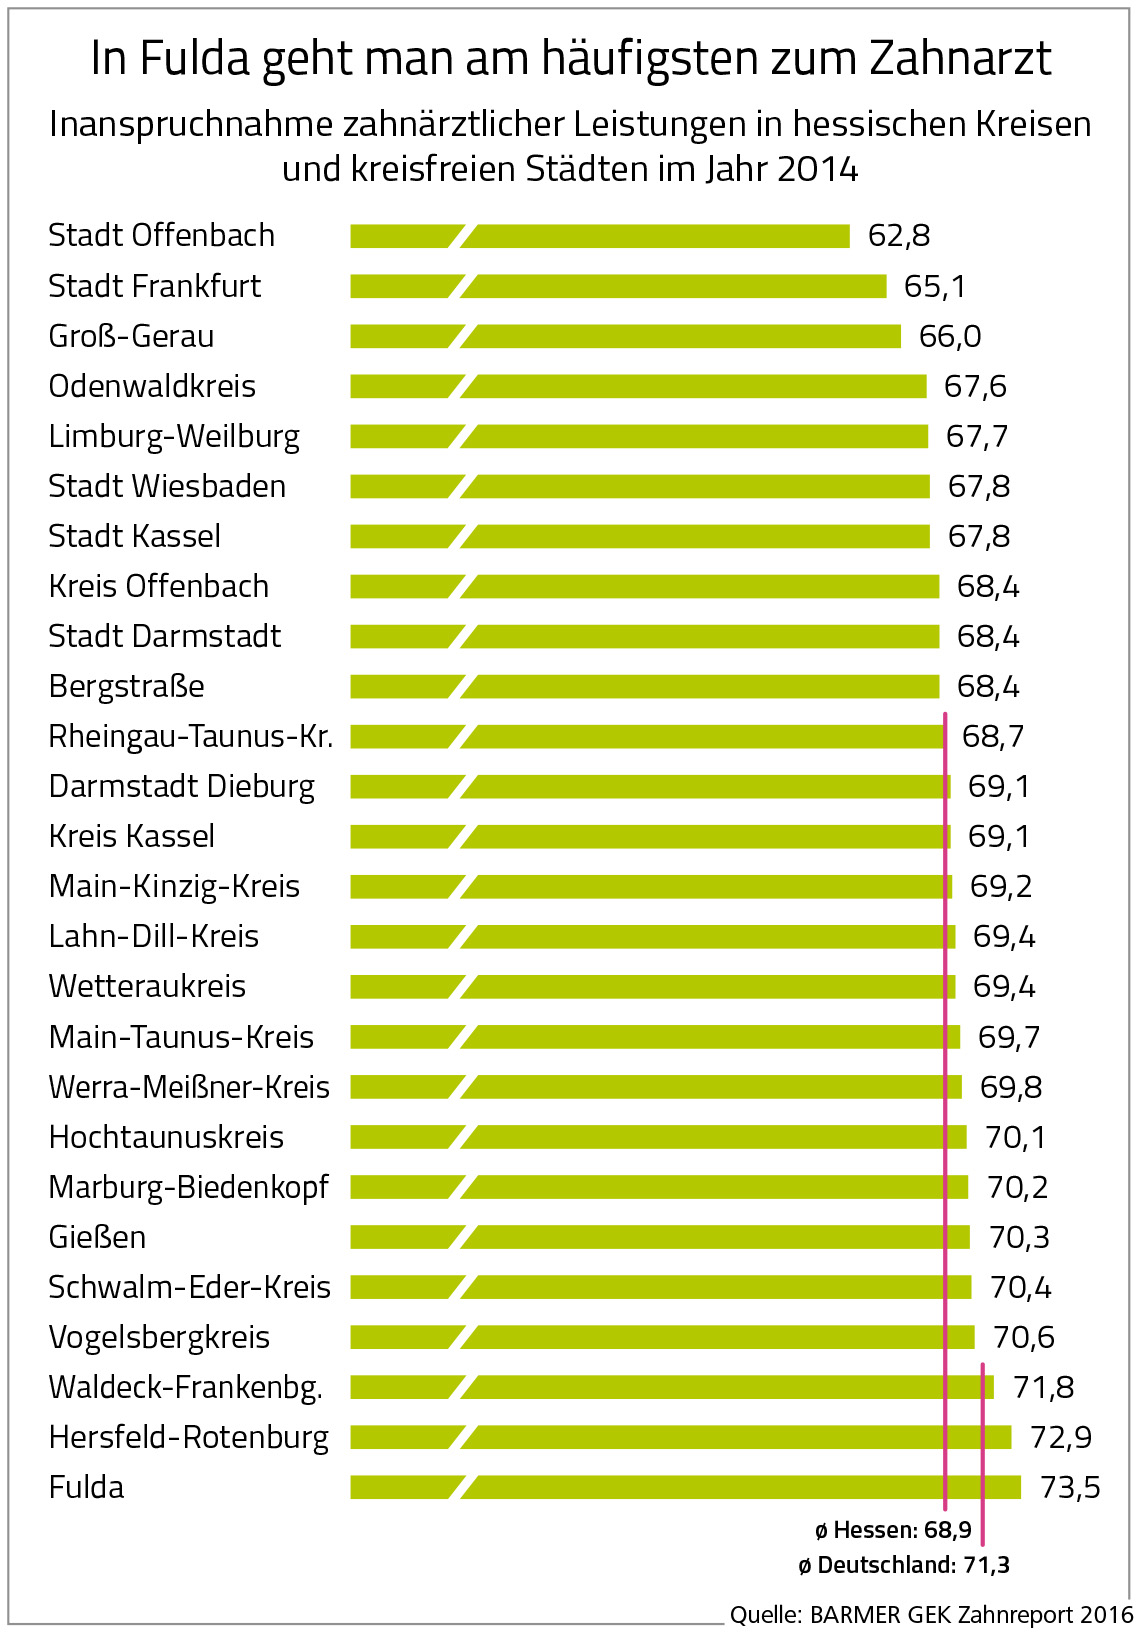 Balkendigramm Inanspruchnahme zahnärztlicher Leistungen in hessischen Kreisen und kreisfreien Städten im Jahr 2014